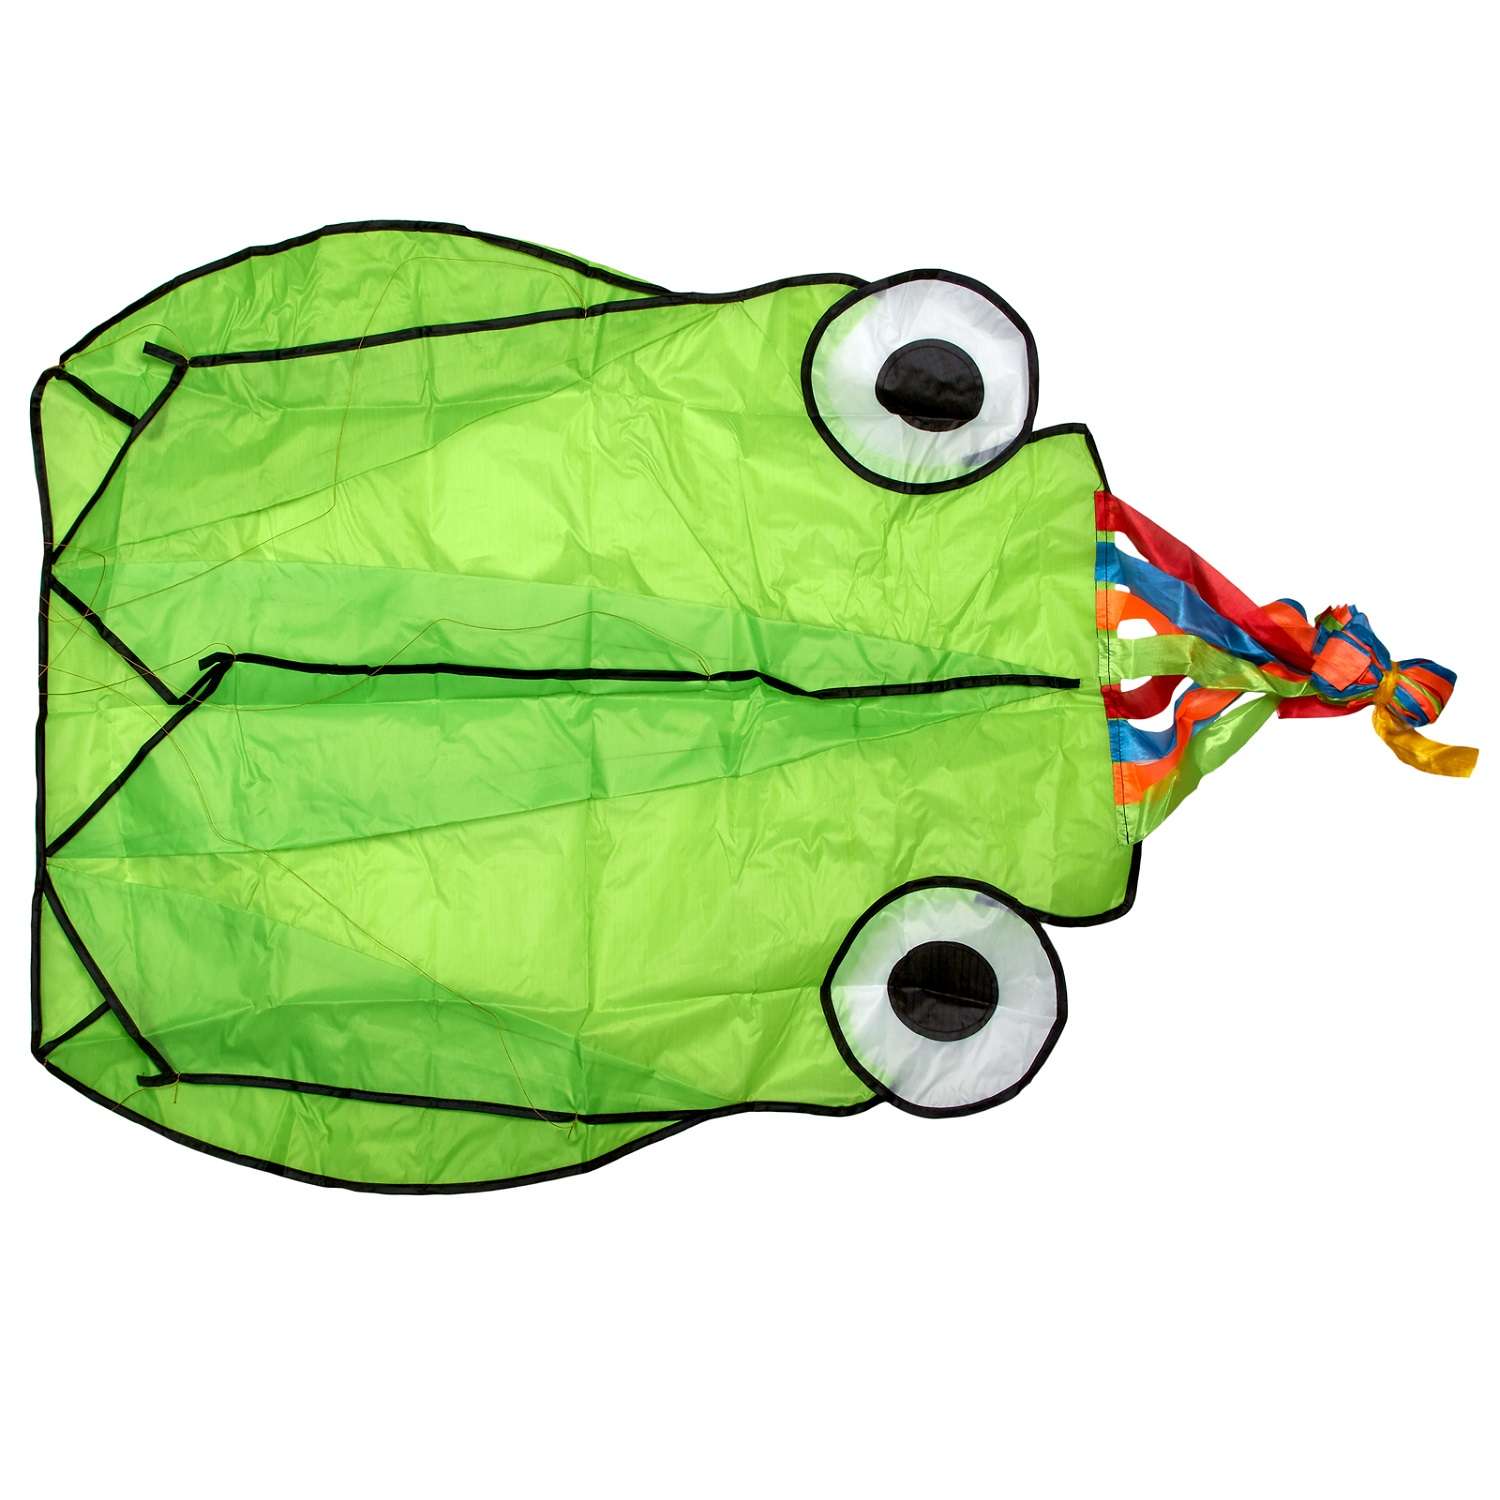 Воздушный змей Bradex Осьминог Зеленый DE 0438 - фото 1